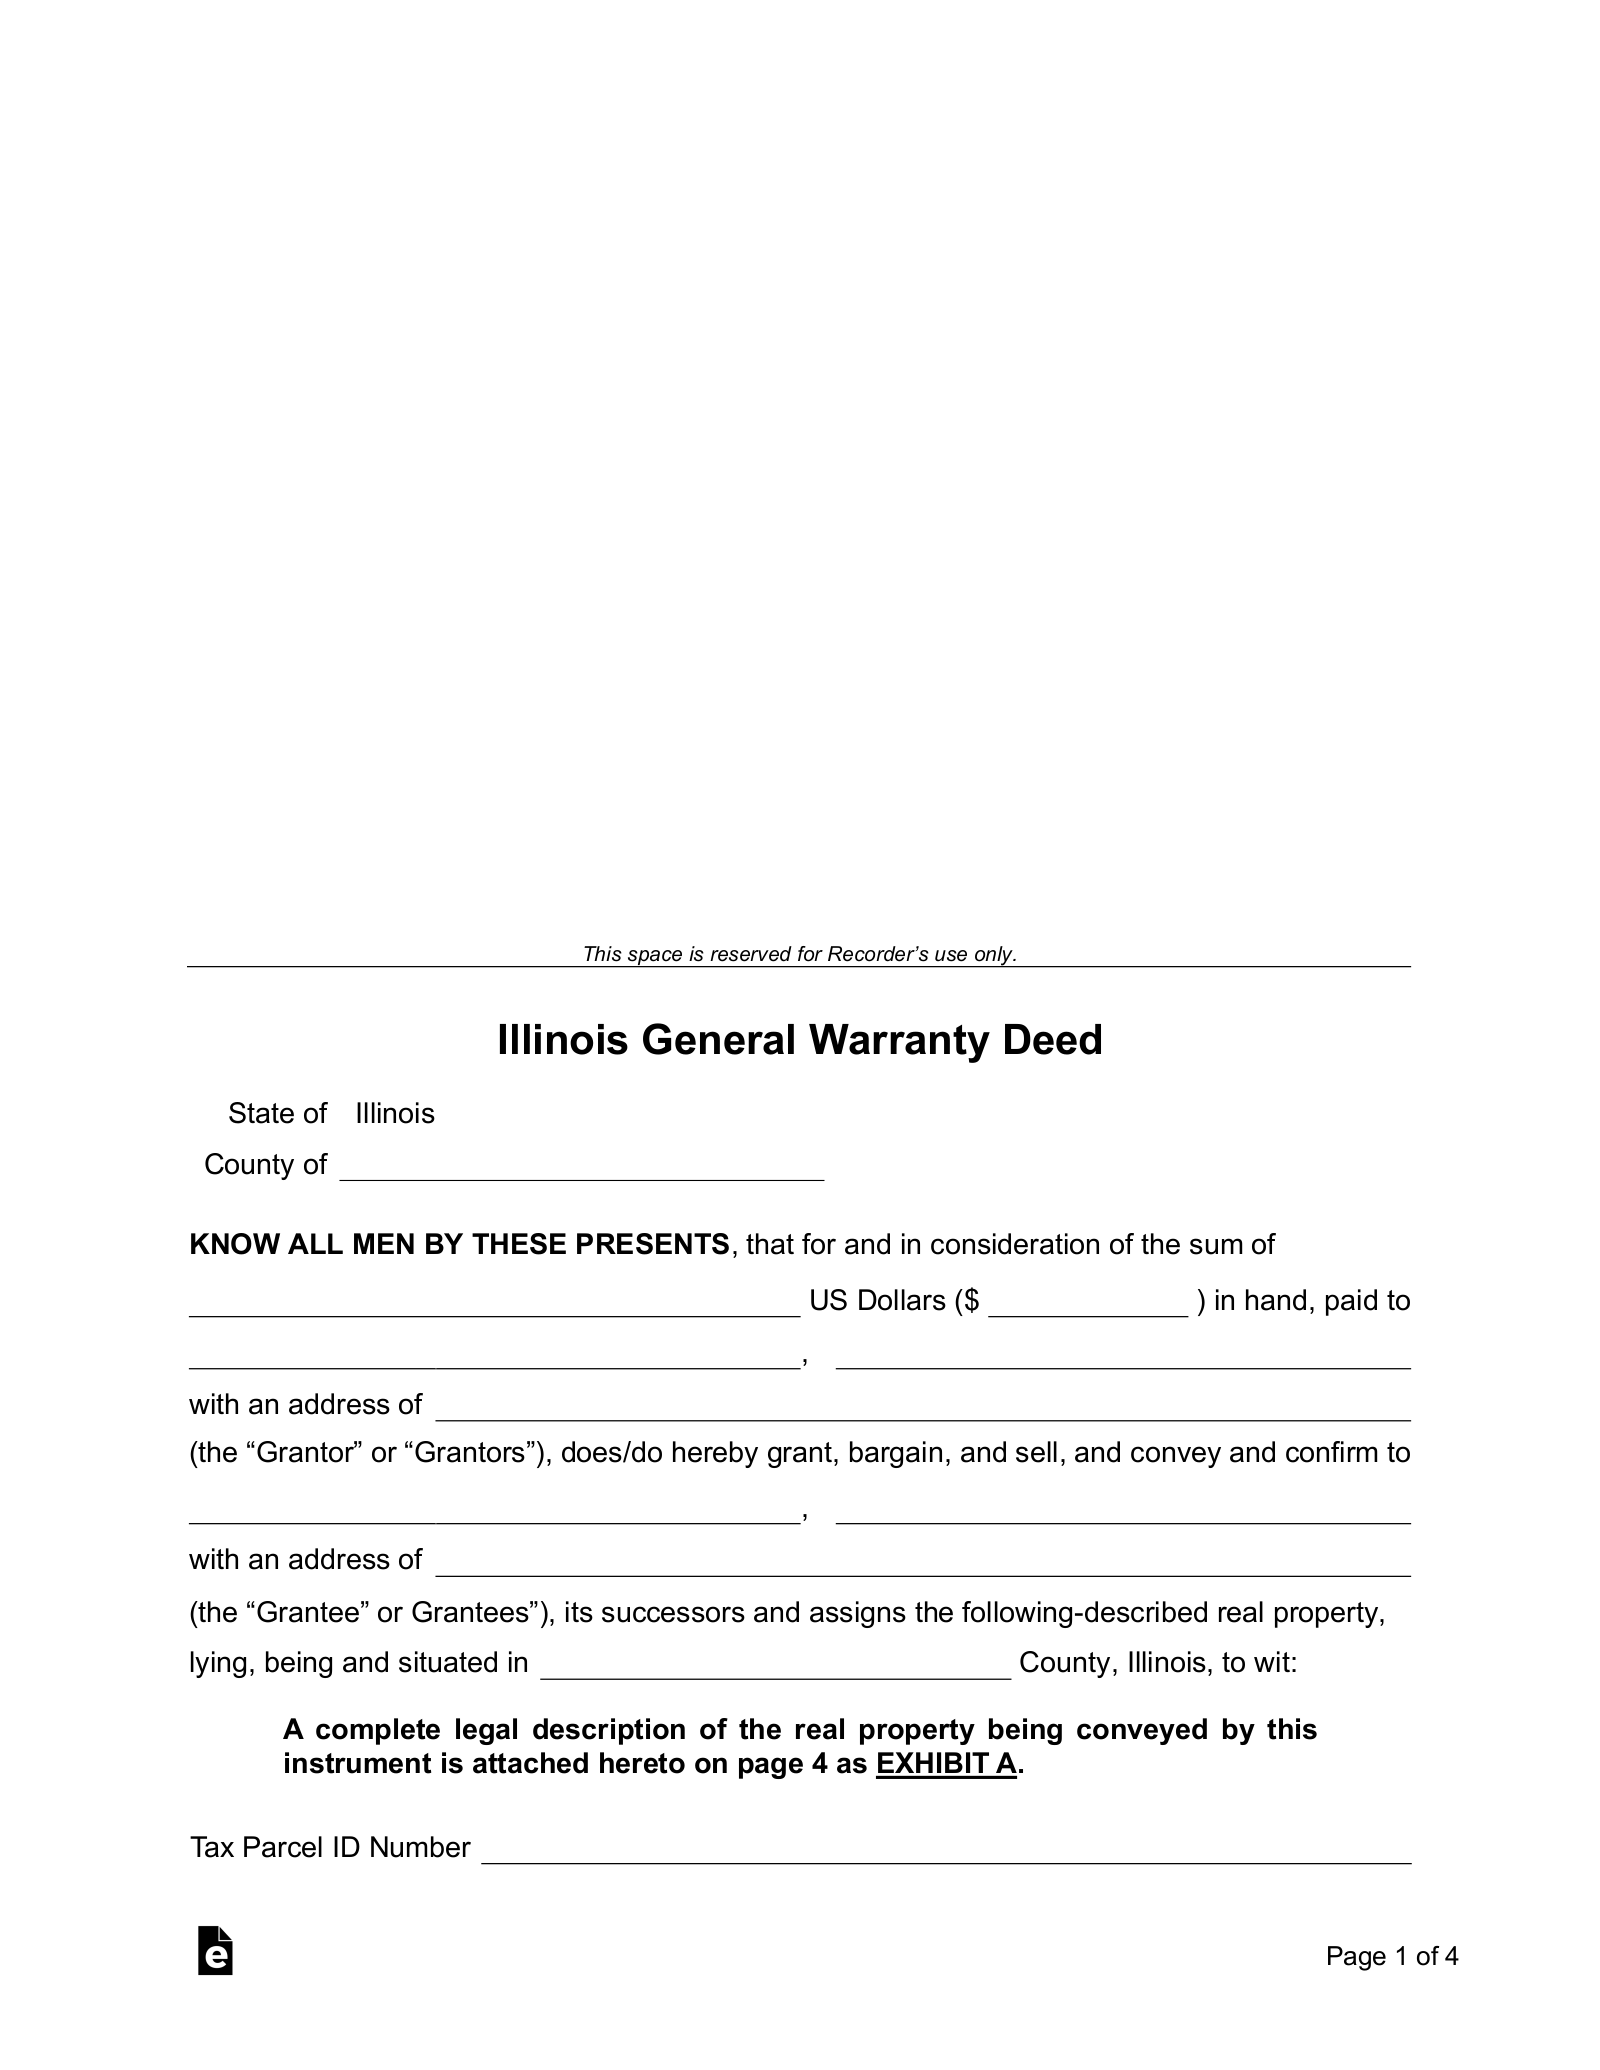 Illinois General (Statutory) Warranty Deed Form